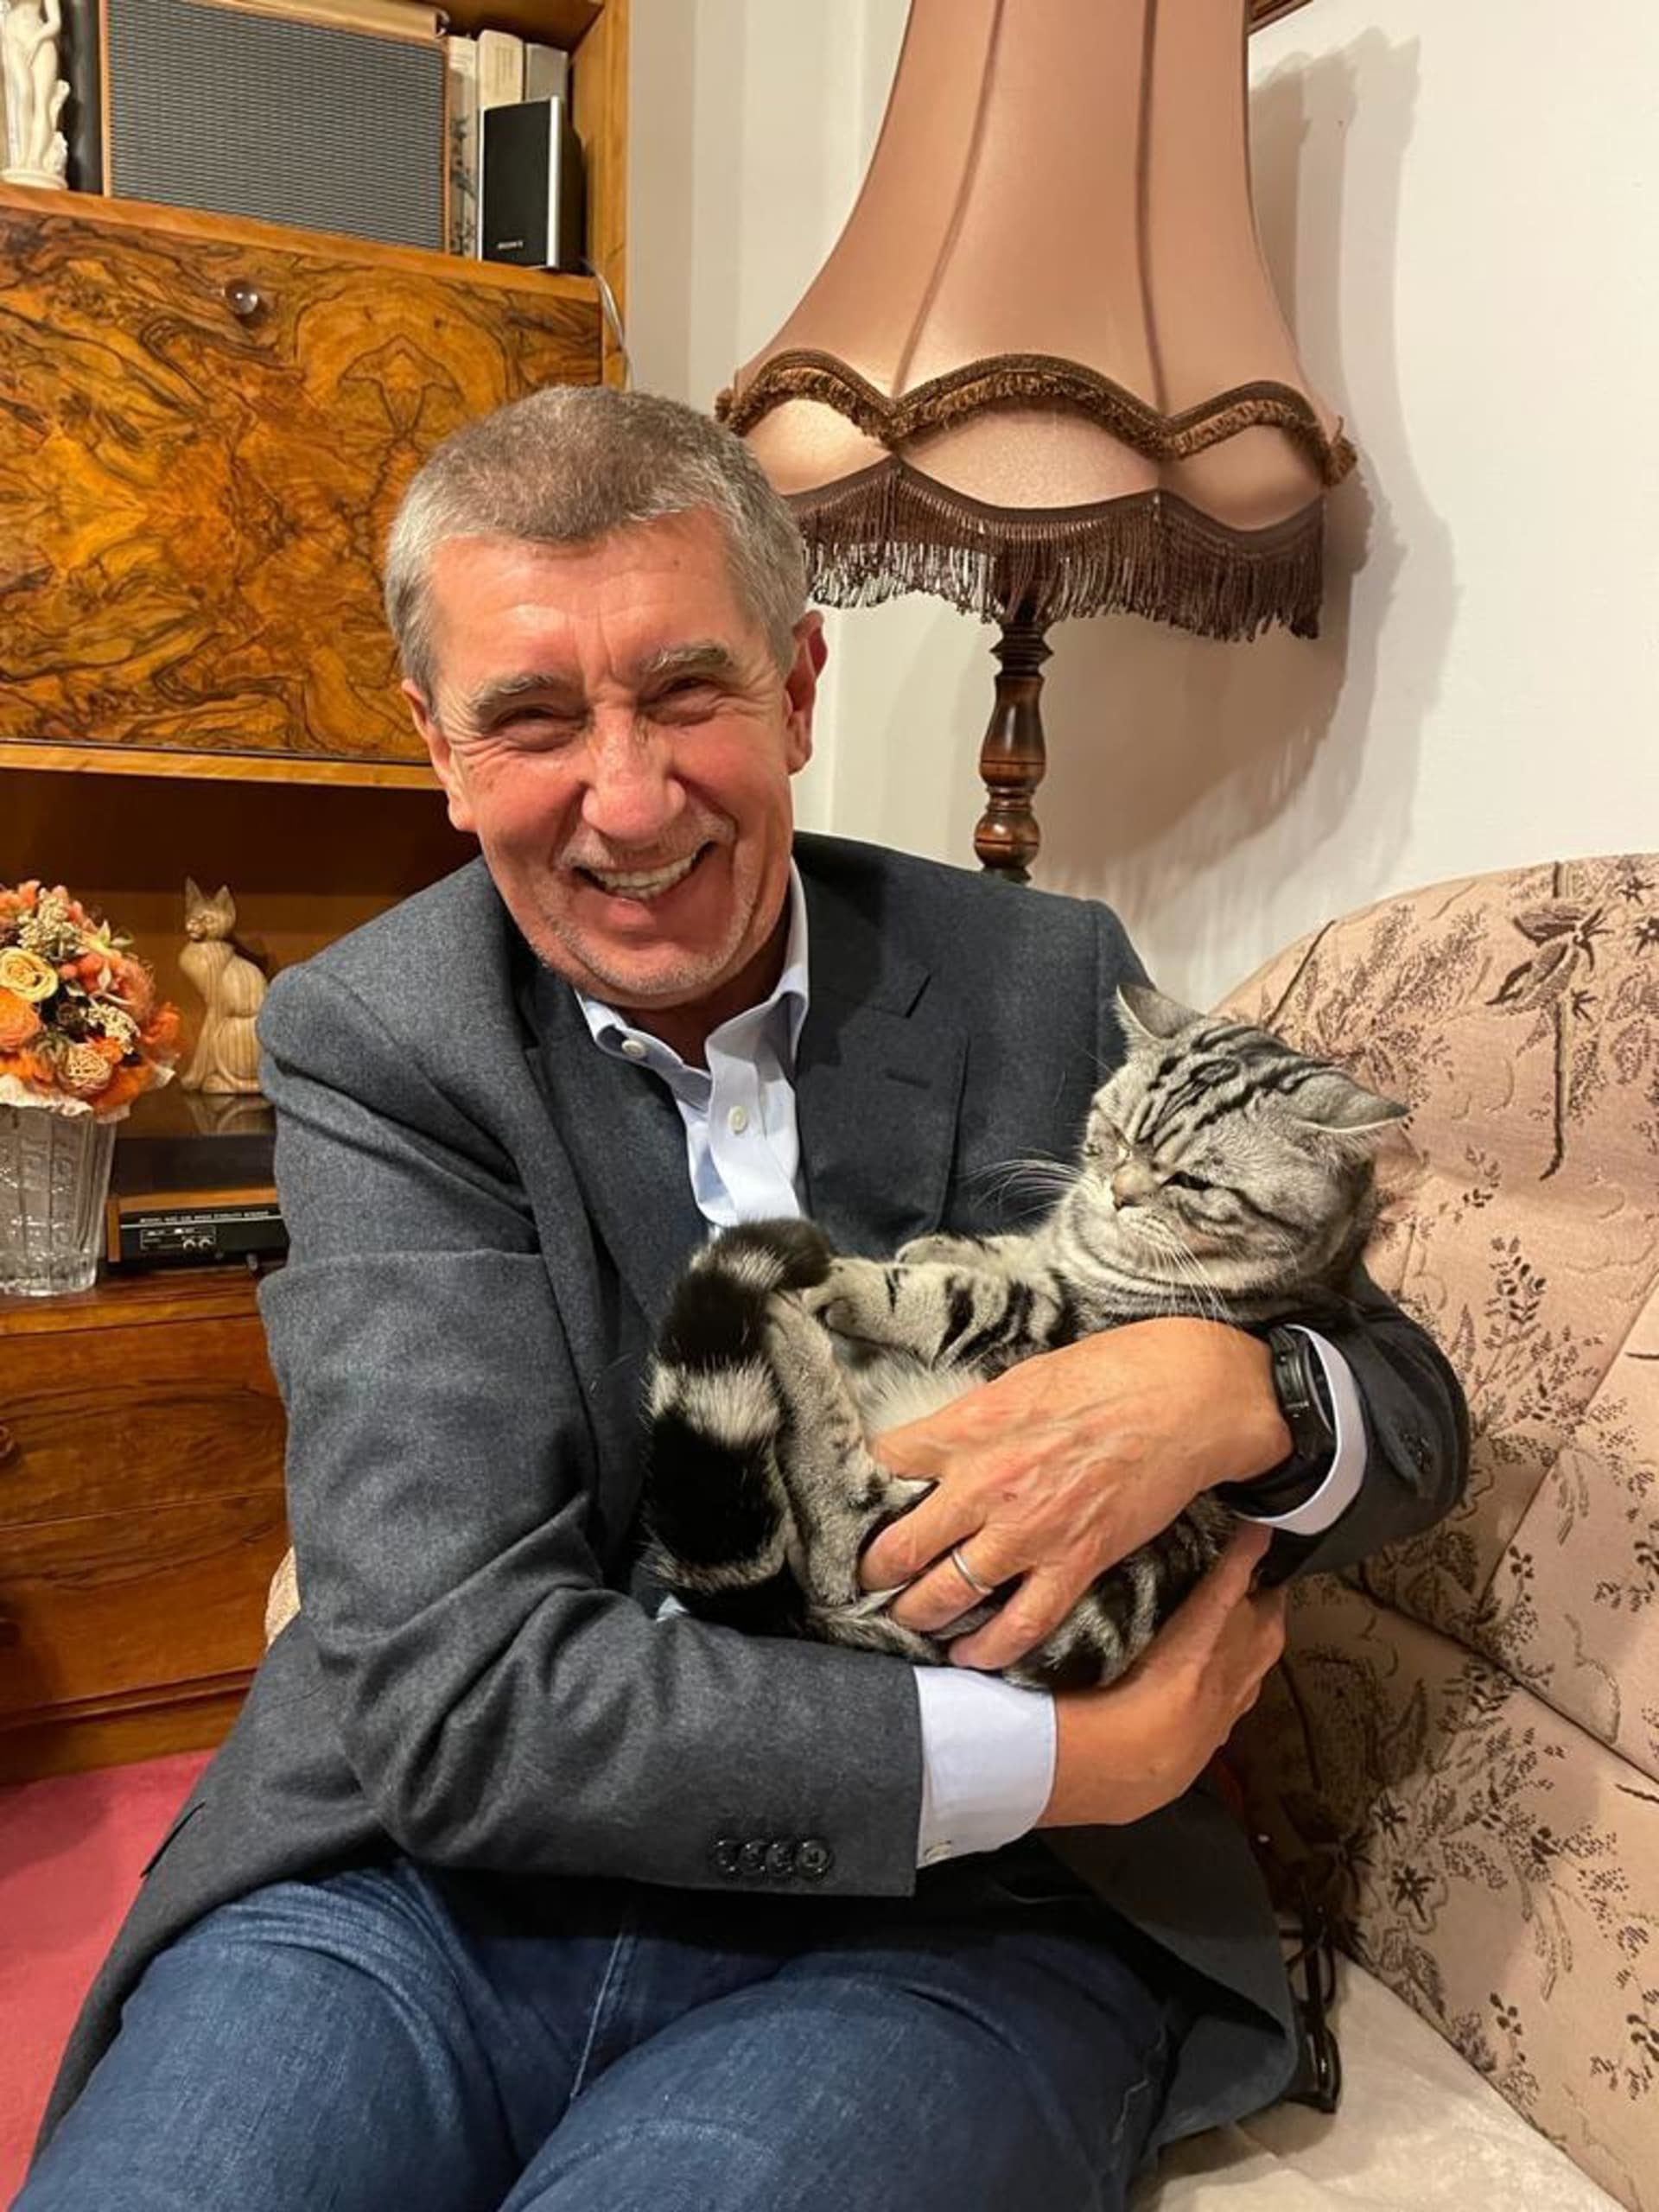 Andrej Babiš s kočkou. Fotka vyvolala reakci jeho protikandidáta Petra Pavla.